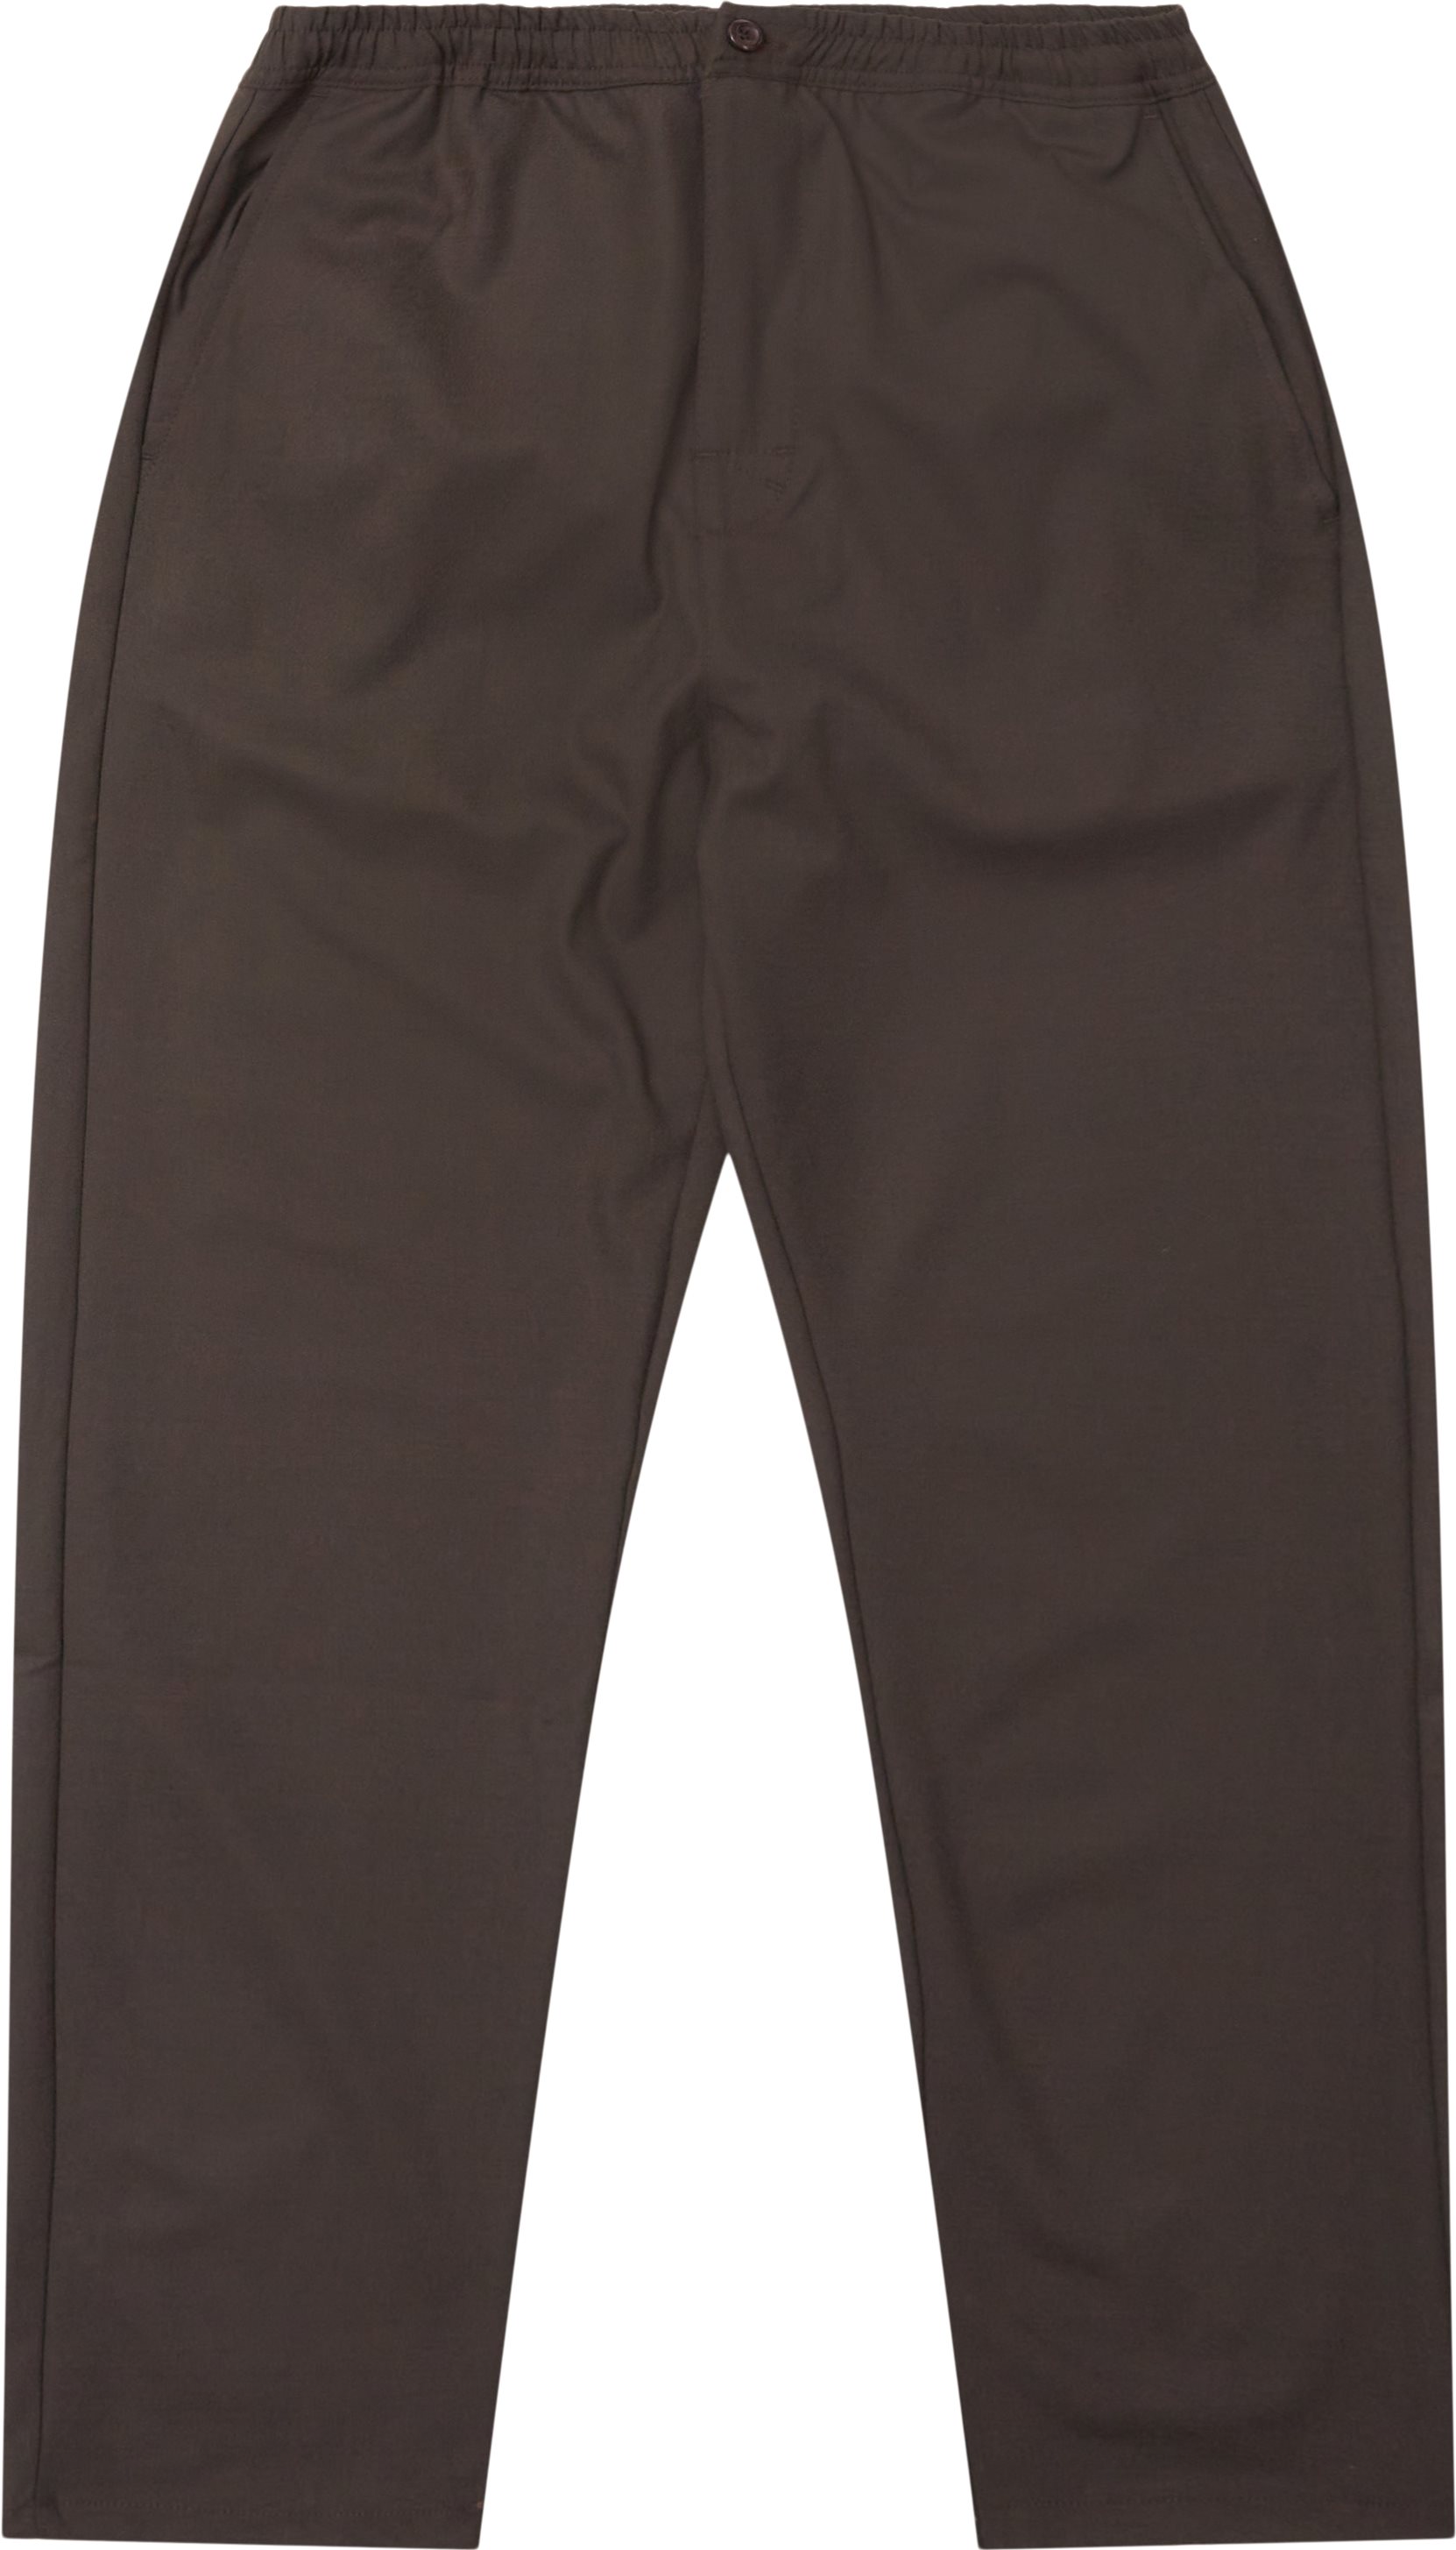 Utah Pants - Byxor - Regular fit - Brun